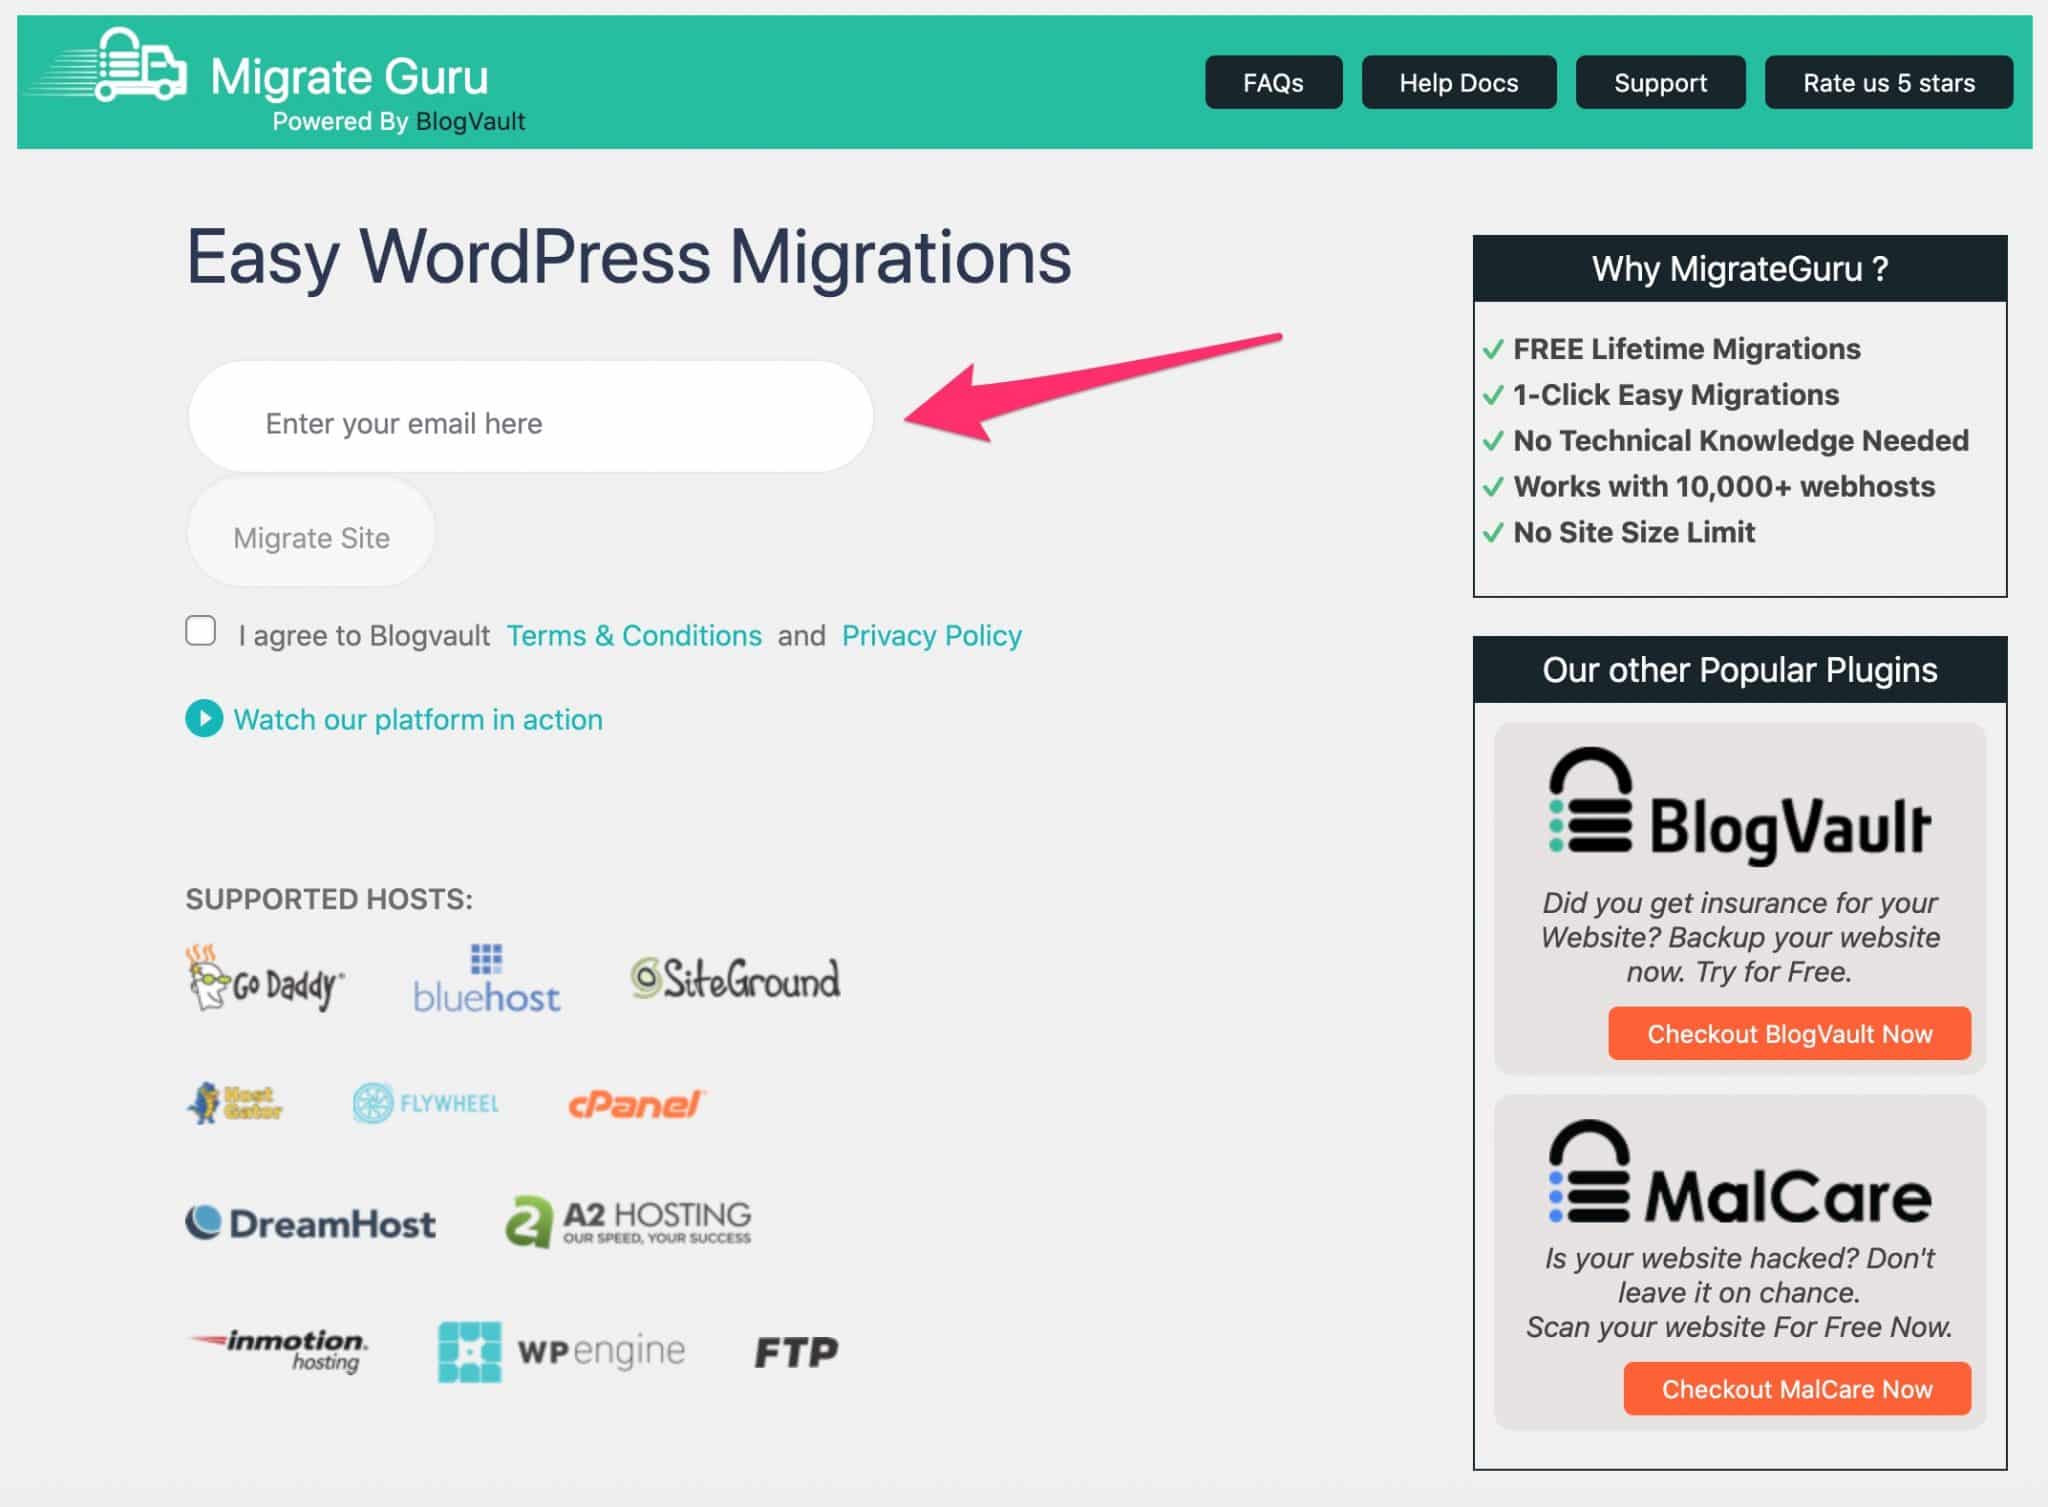 Migrate Guru mail, a migration WordPress plugin.